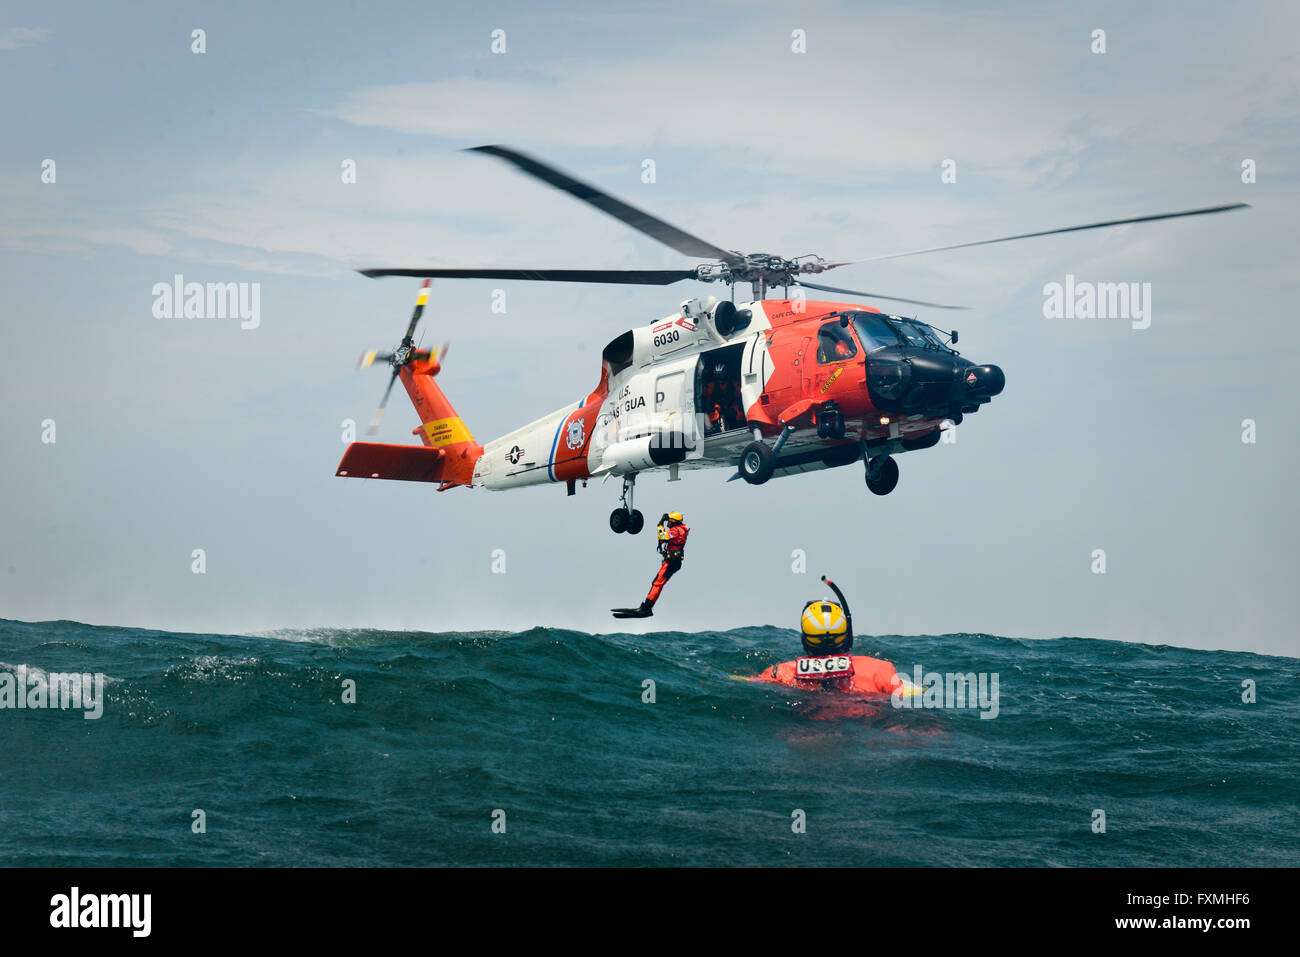 A los nadadores de rescate de la Guardia Costera de EEUU están desplegados desde un helicóptero MH-60 Jayhawk durante la formación de rescate en el Océano Atlántico, el 23 de junio de 2015 cerca de Cape Cod, Massachusetts. Foto de stock